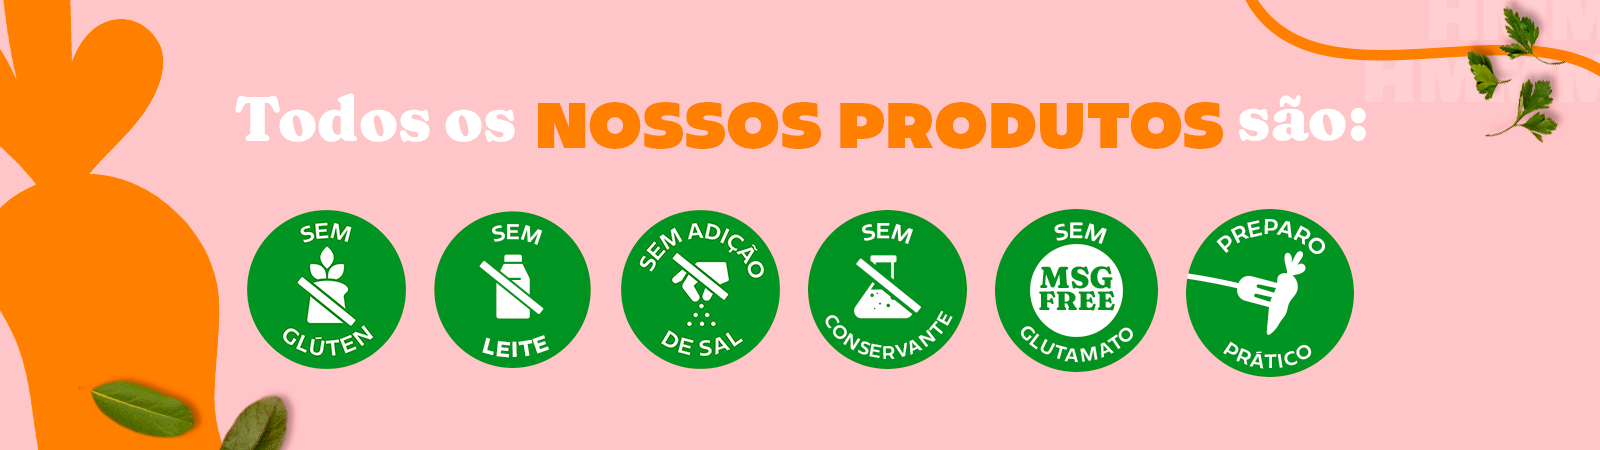 Banner ilustrativo da categoria - Macarrão - Claims